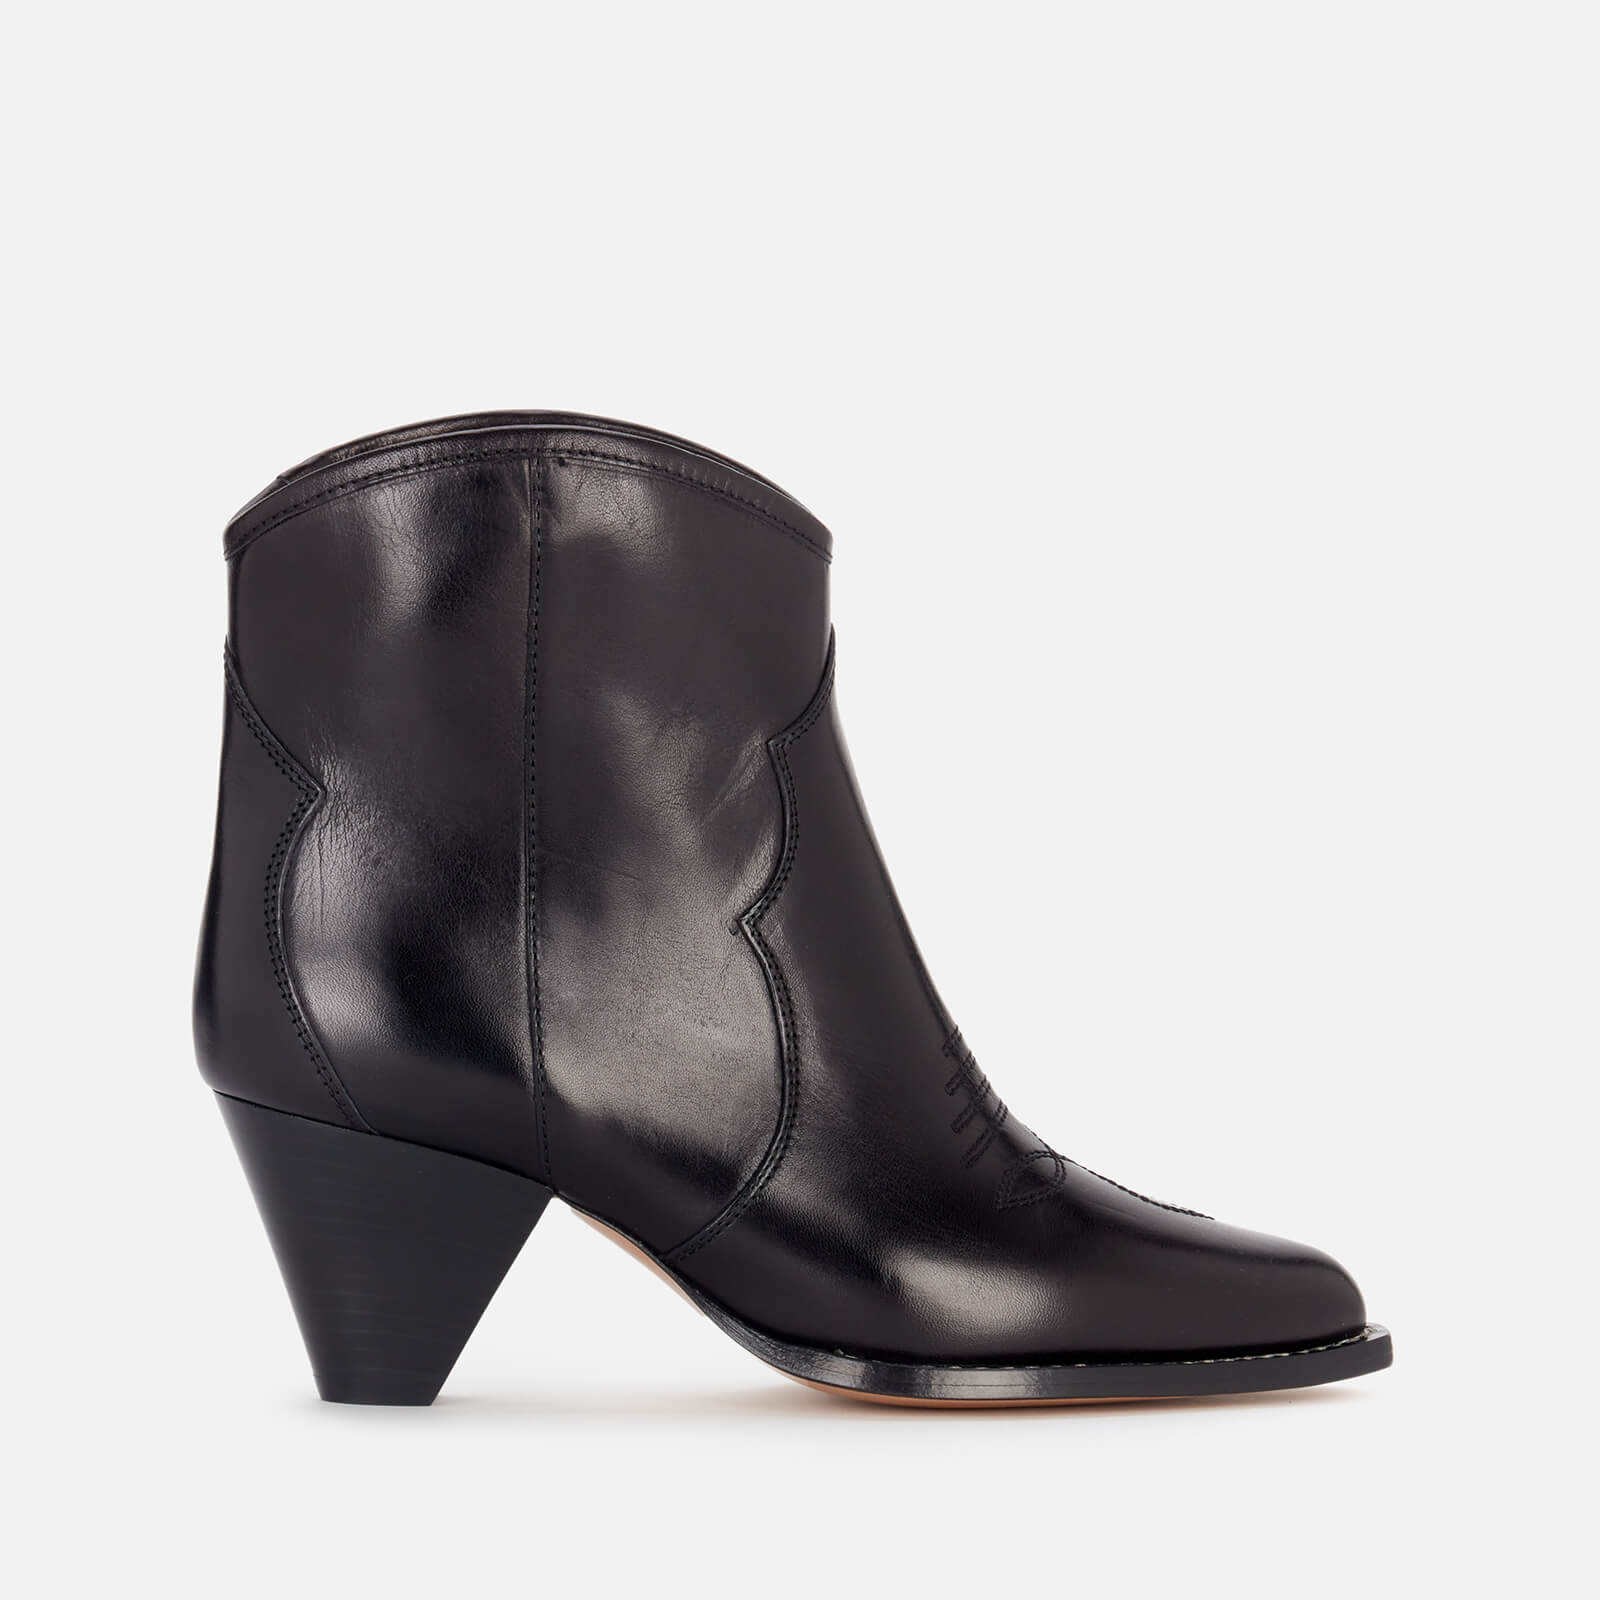 Isabel Marant Women's Darizo Leather Heeled Ankle Boots - Black - UK 5